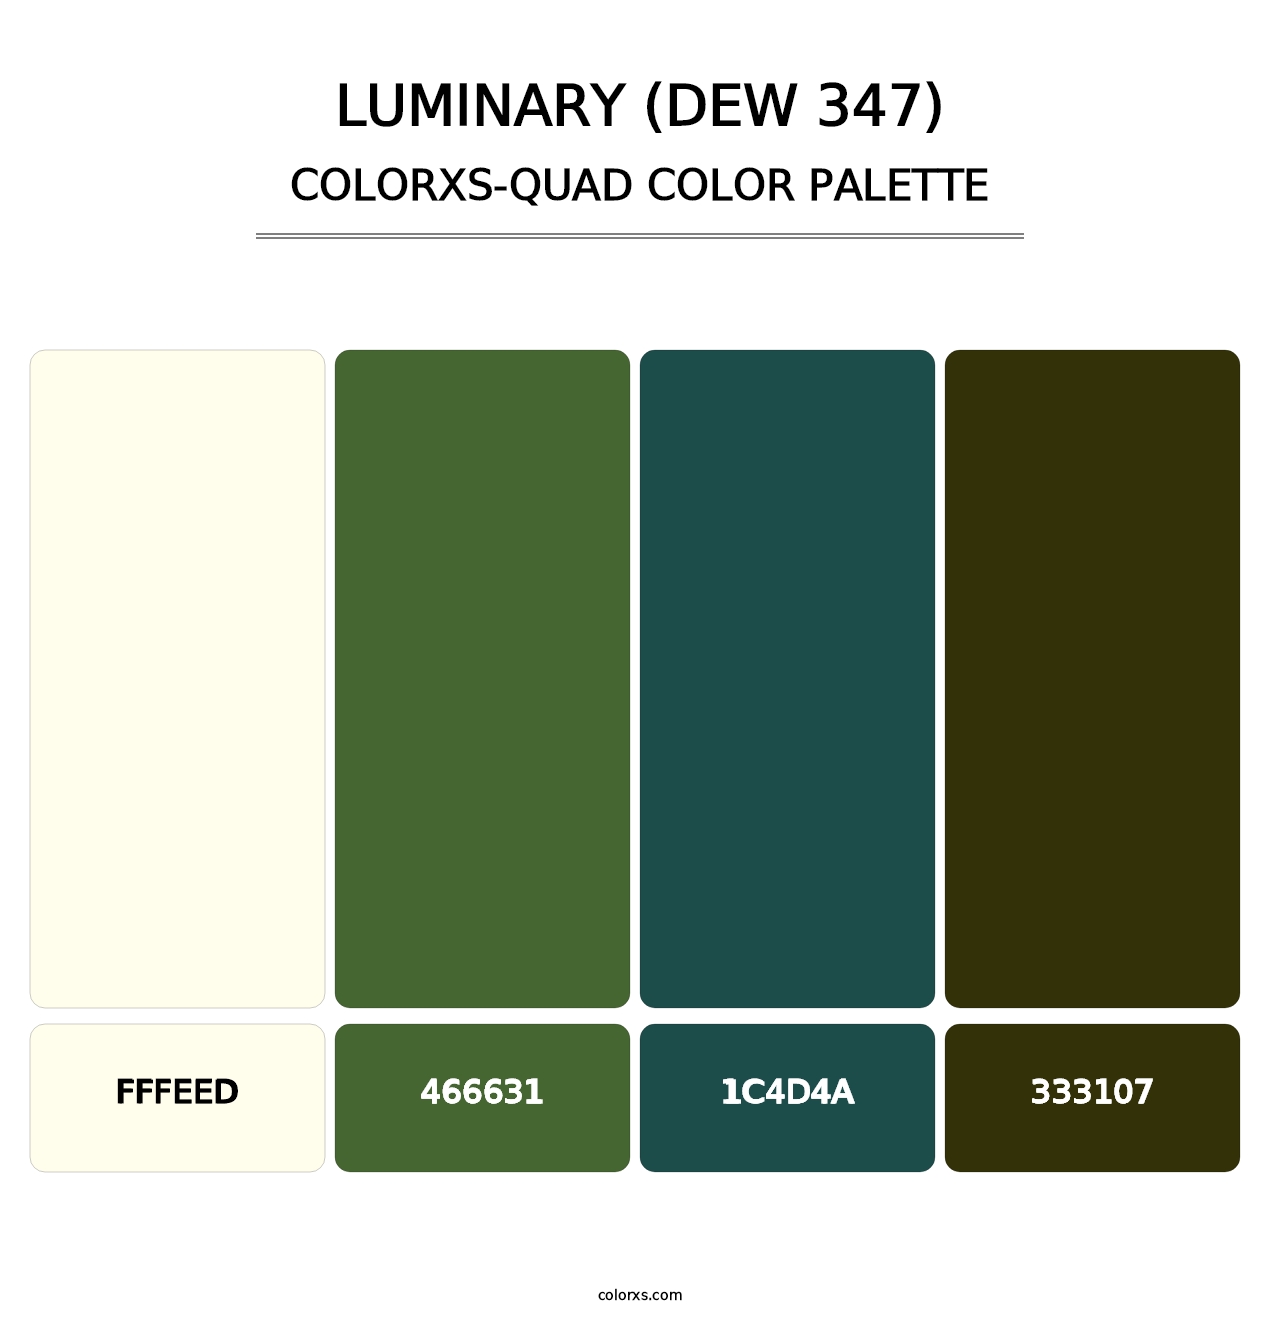 Luminary (DEW 347) - Colorxs Quad Palette